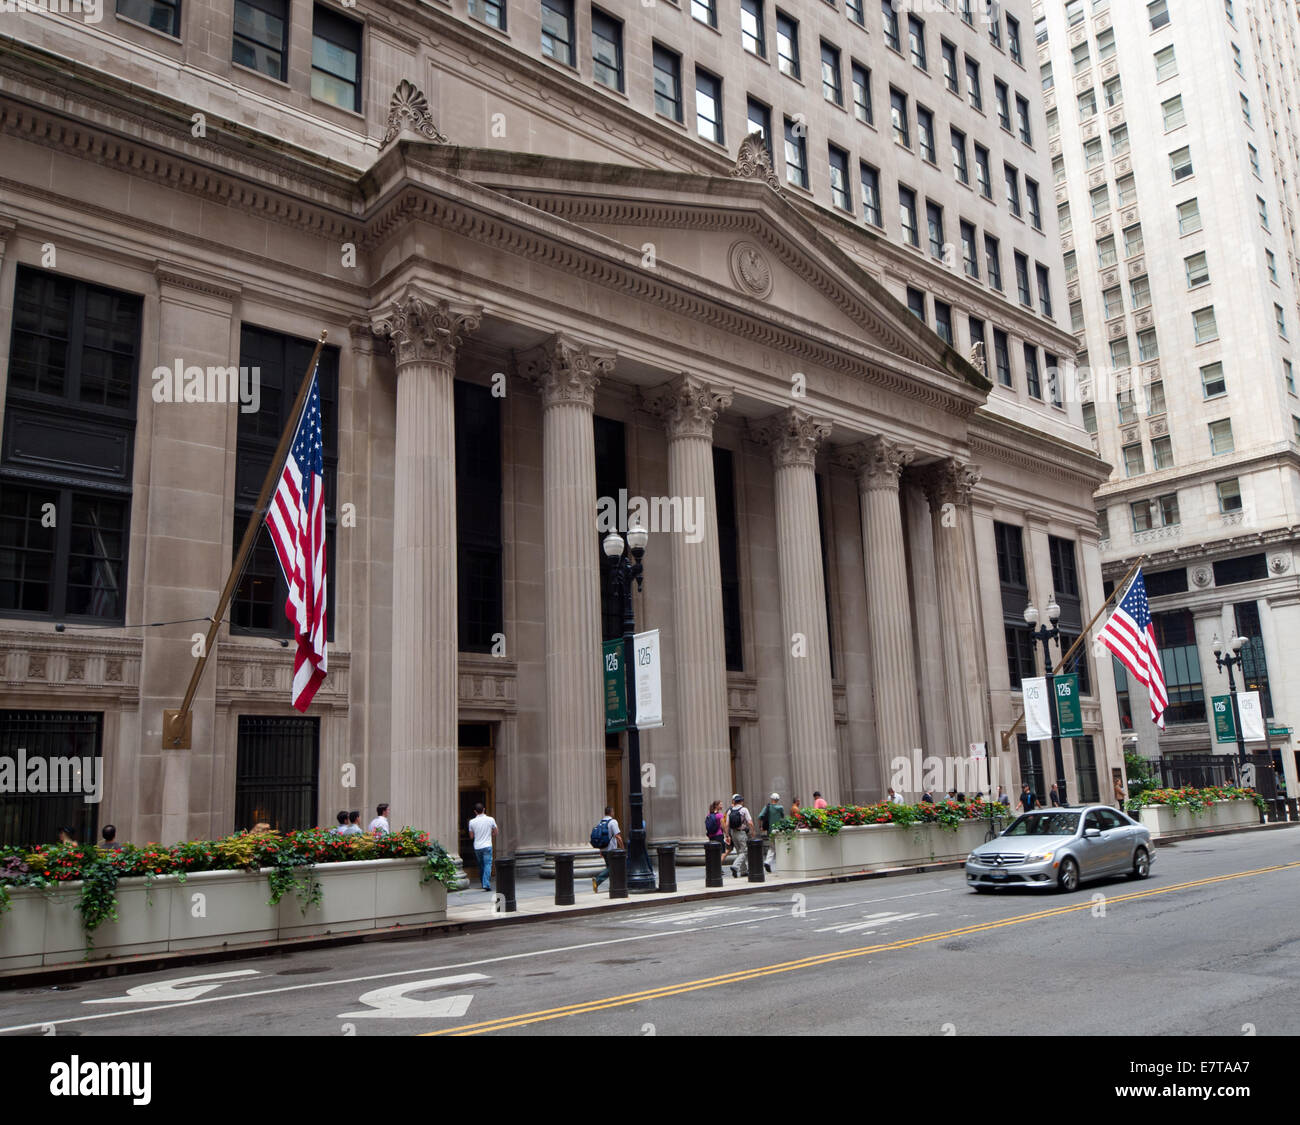 Ein Blick auf die Federal Reserve Bank of Chicago (Chicago Fed) im Finanzdistrikt Chicagos. Stockfoto